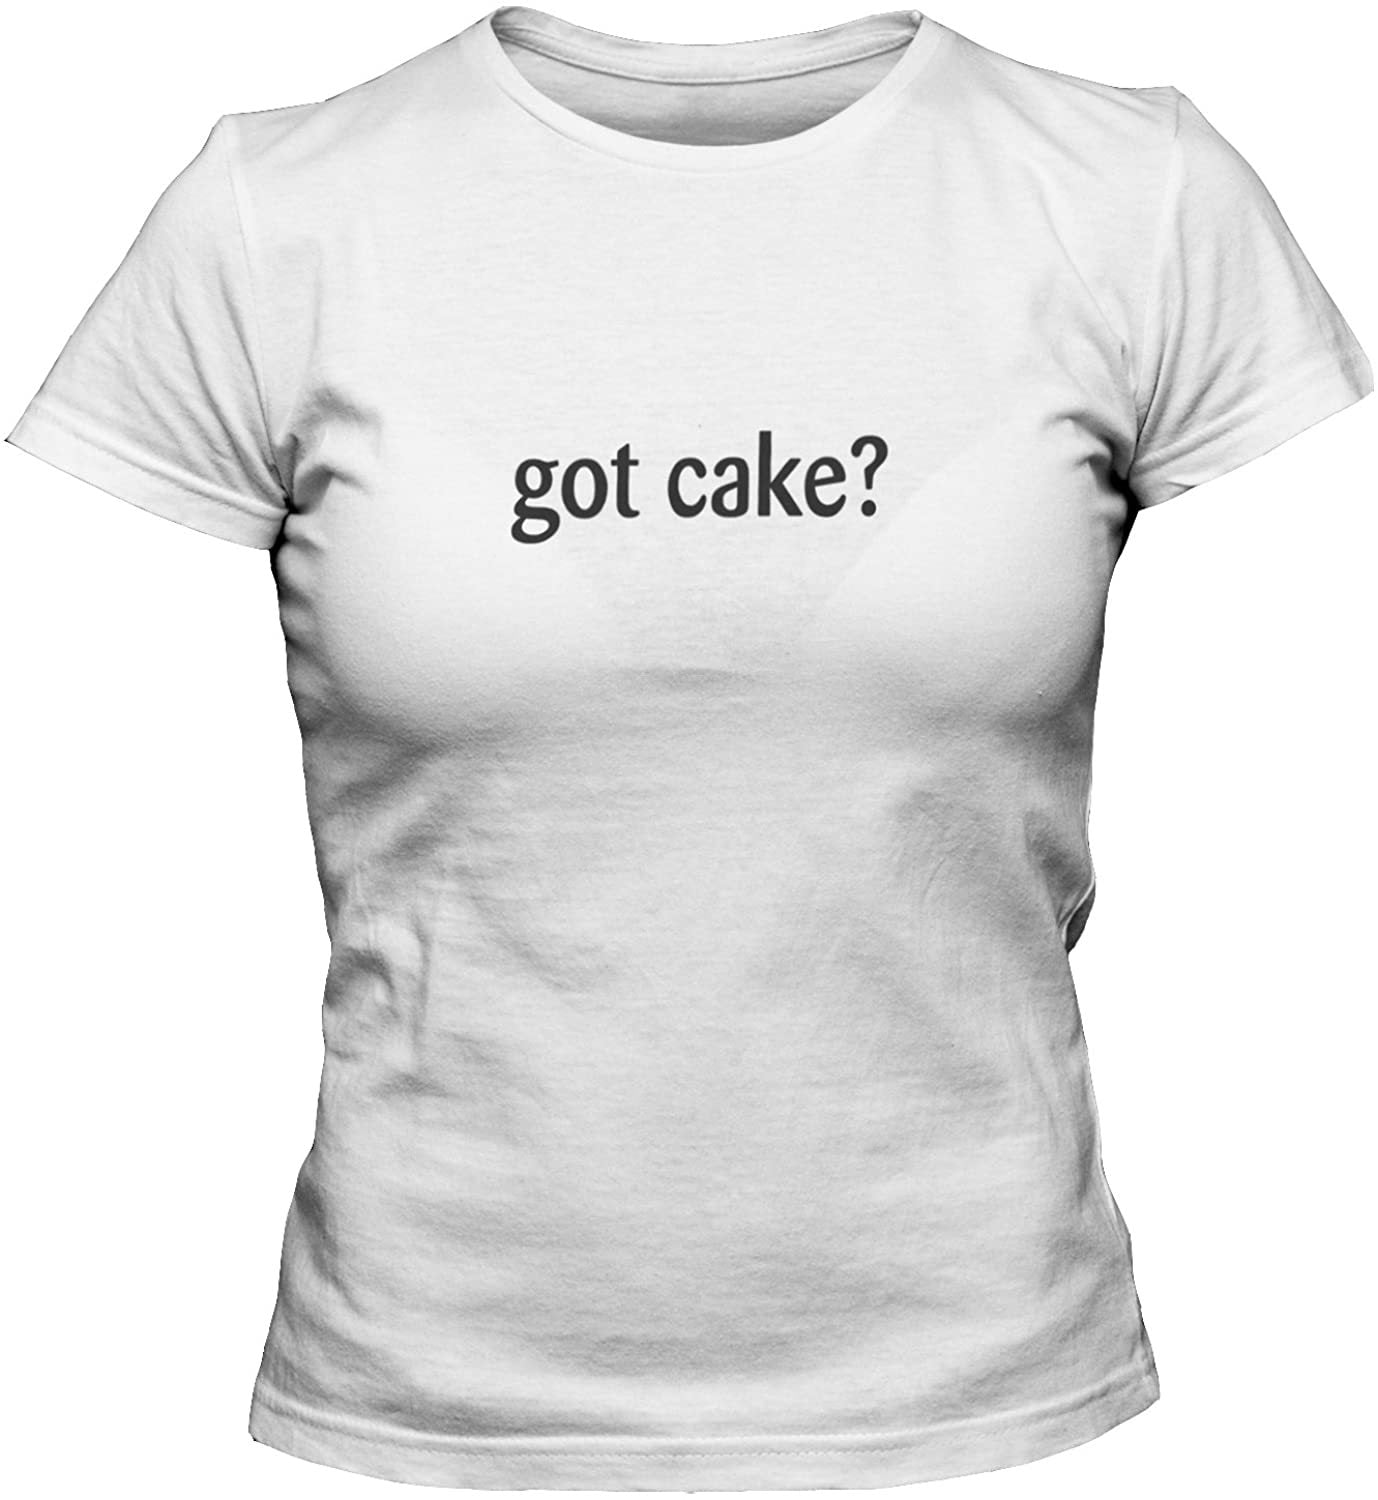 NXY Women's Got Cake T-Shirt